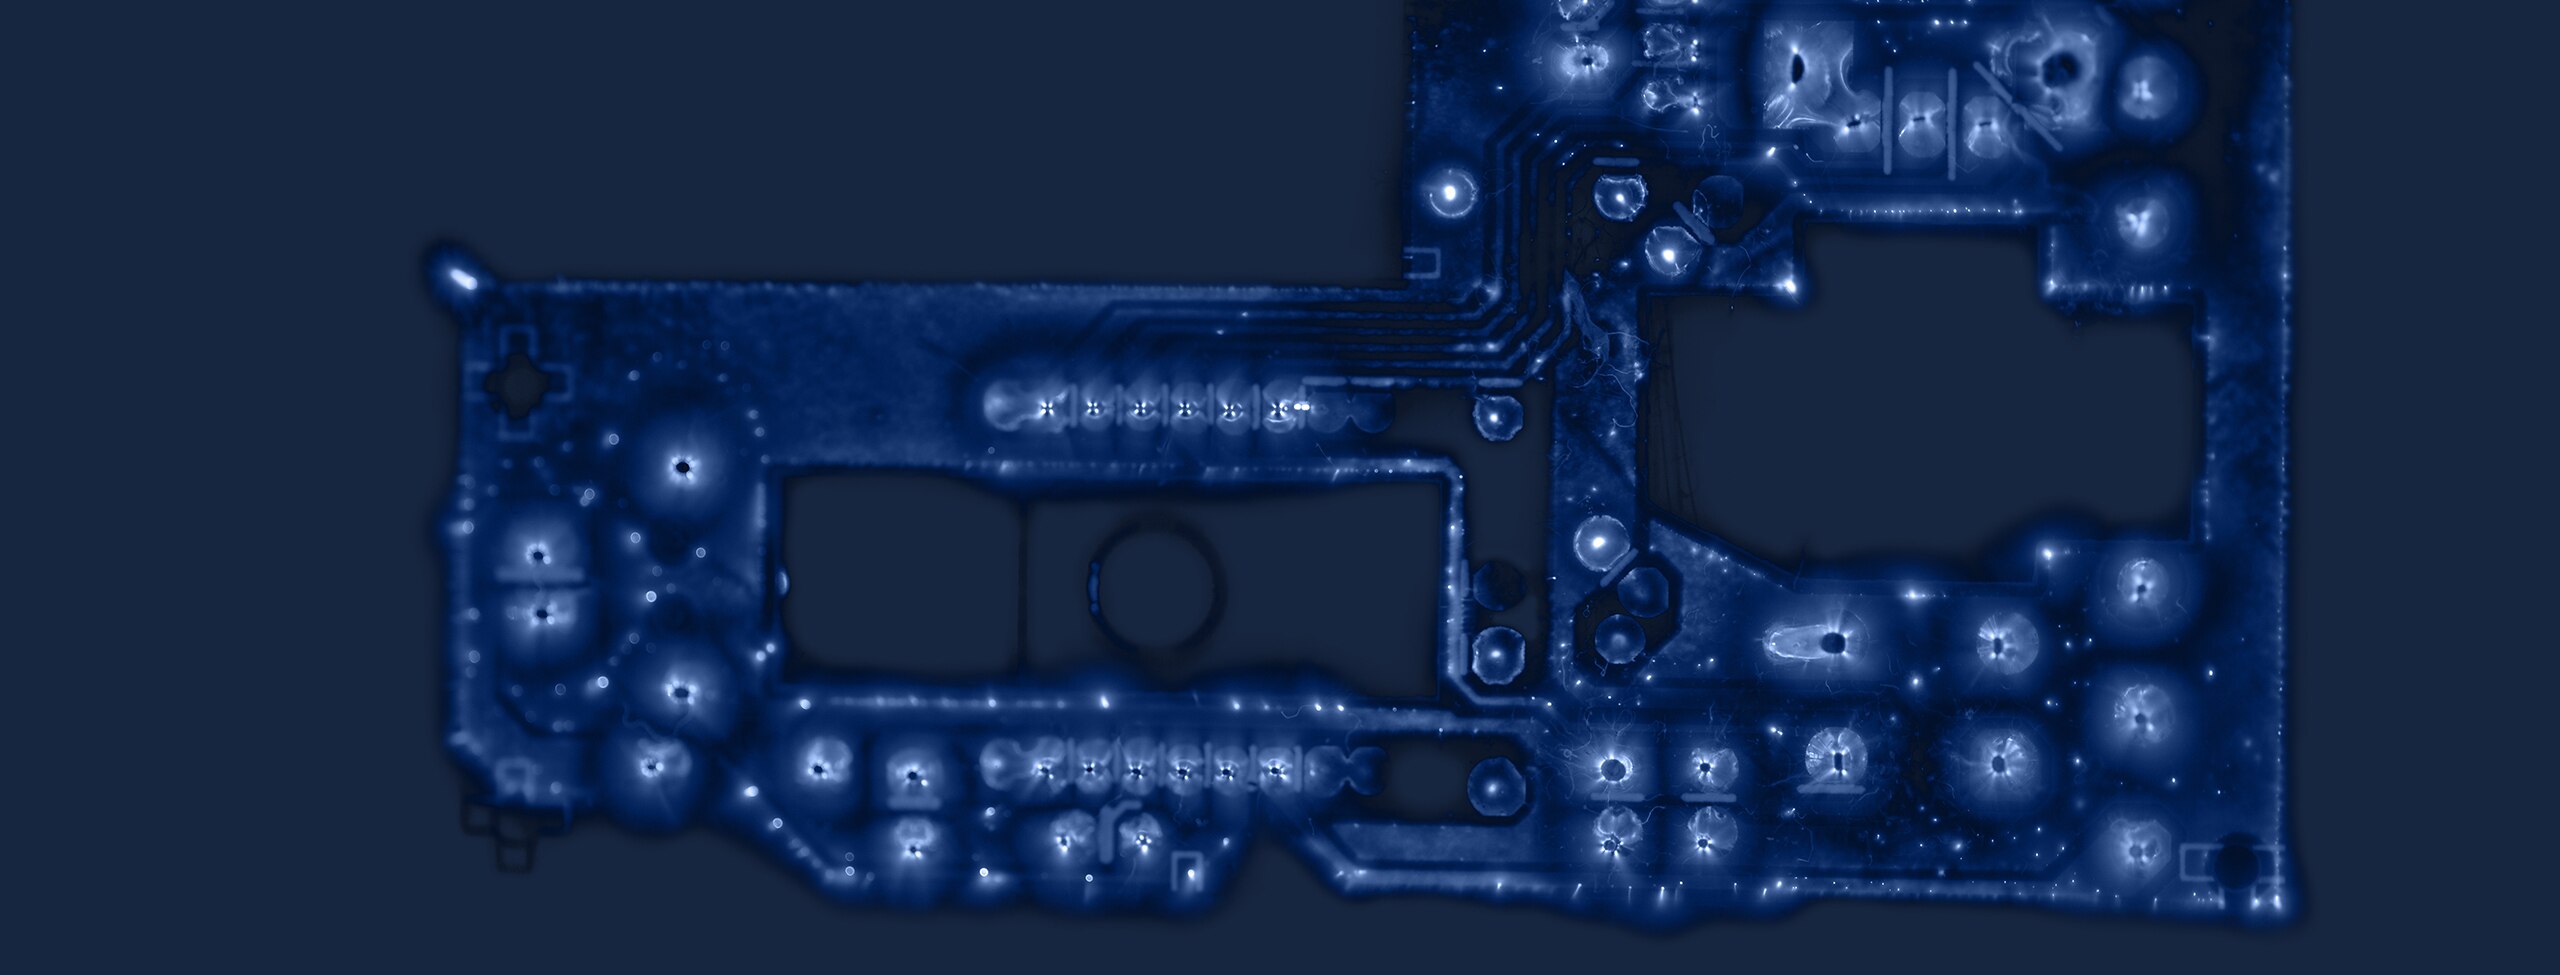 Blue circuit board